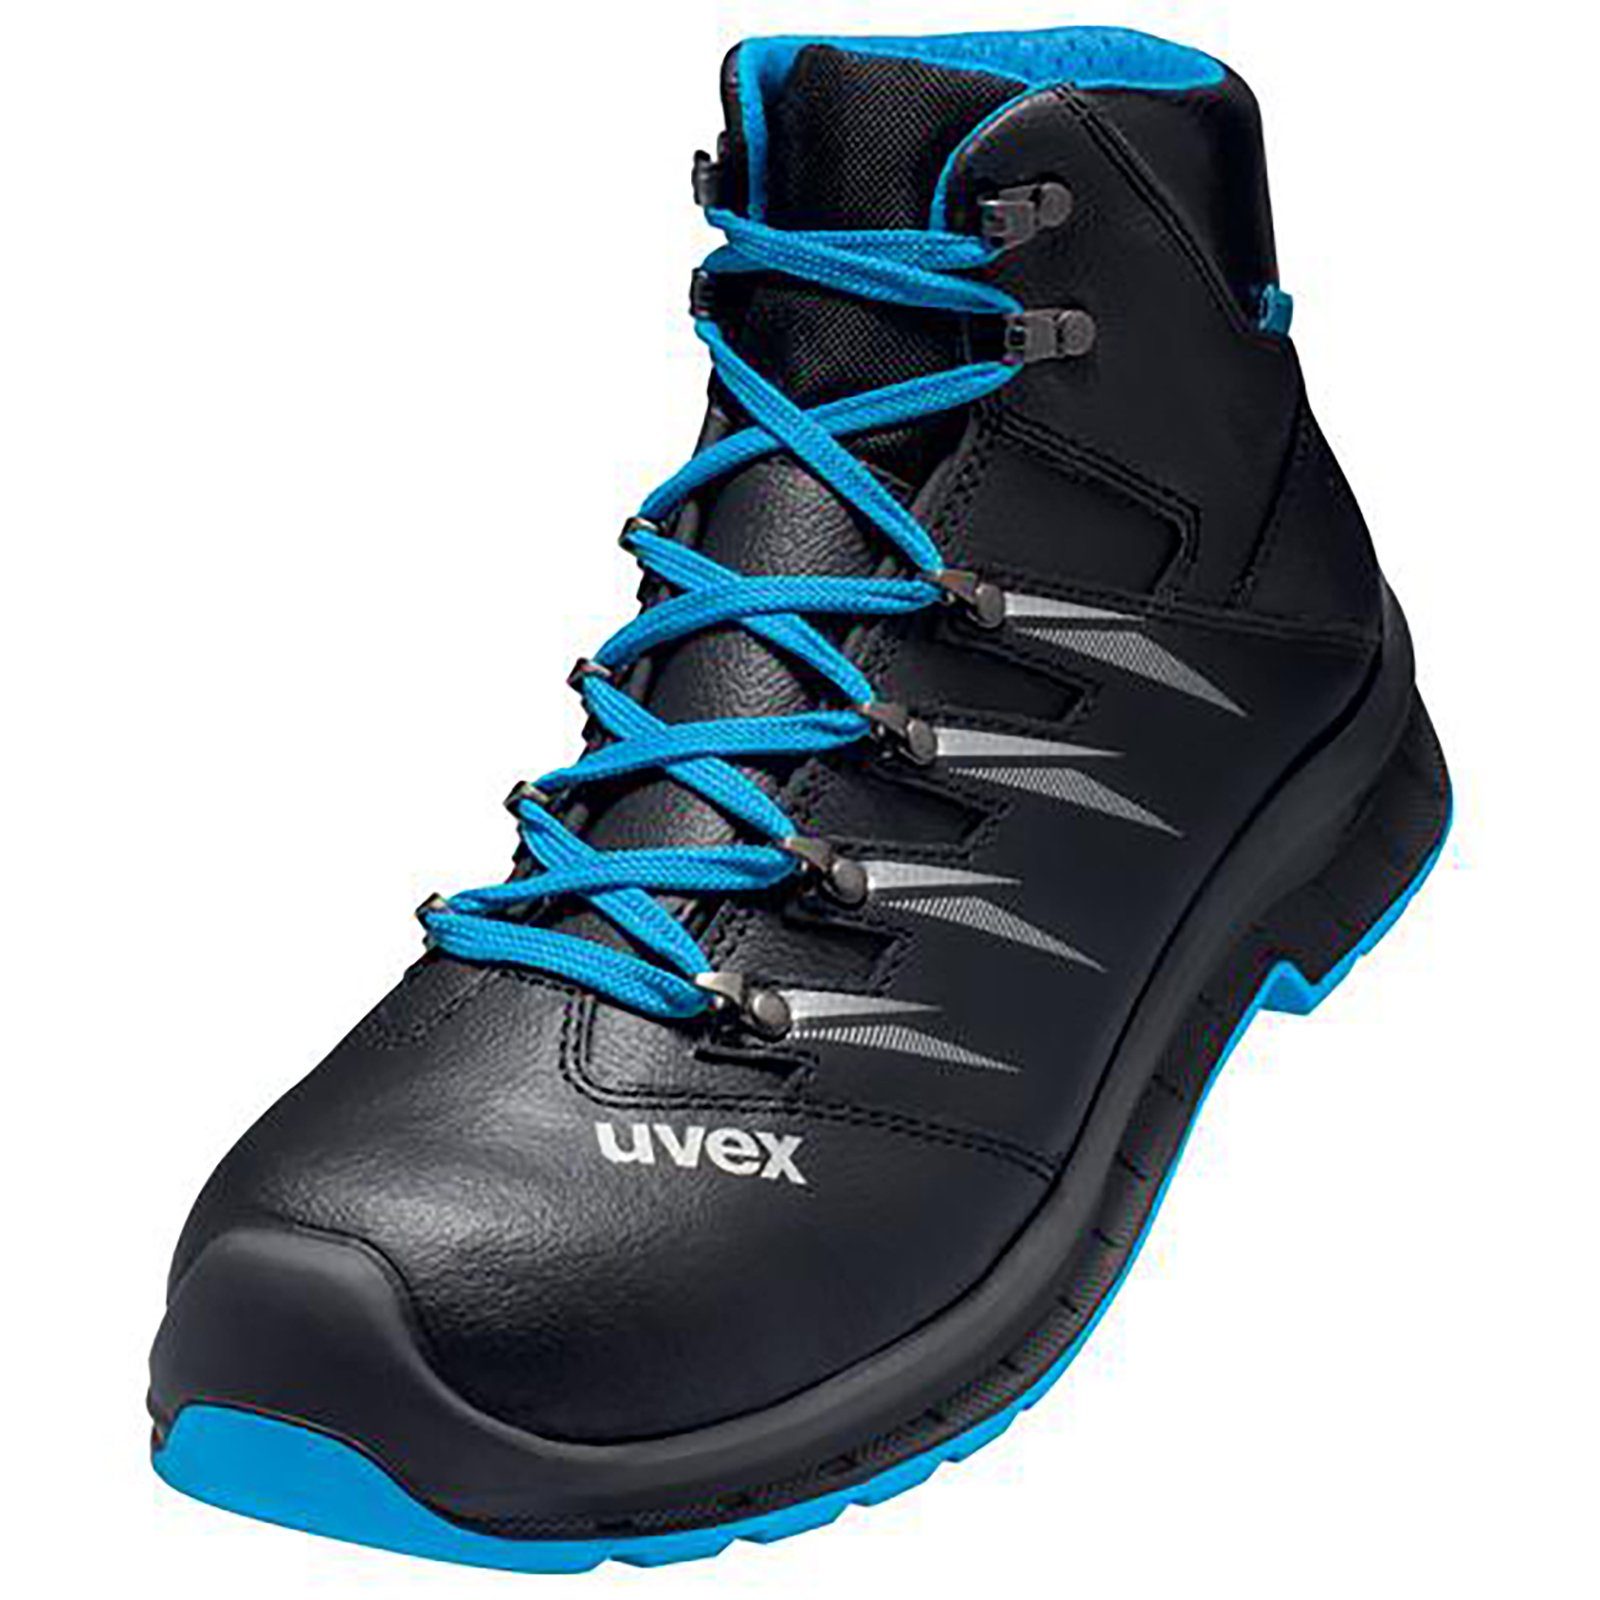 Uvex 2 trend Stiefel S3 blau, schwarz Weite 11 Sicherheitsstiefel